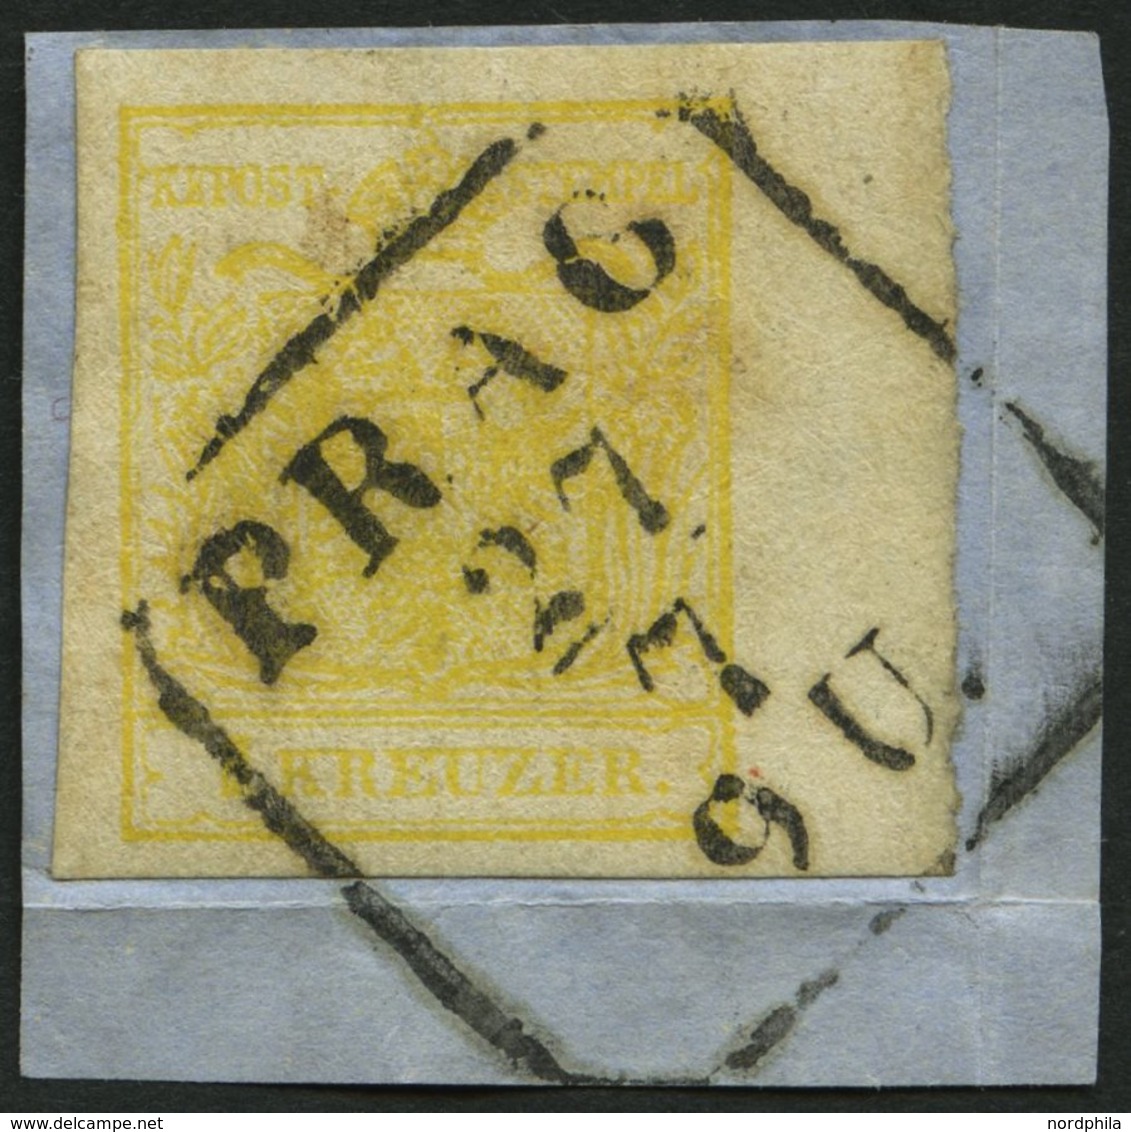 ÖSTERREICH 1Ya BrfStk, 1854, 1 Kr. Gelb, Maschinenpapier, Type Ib, Mit Rechtem Rand (6 Mm), R4 PRAG, Prachtbriefstück - Usados